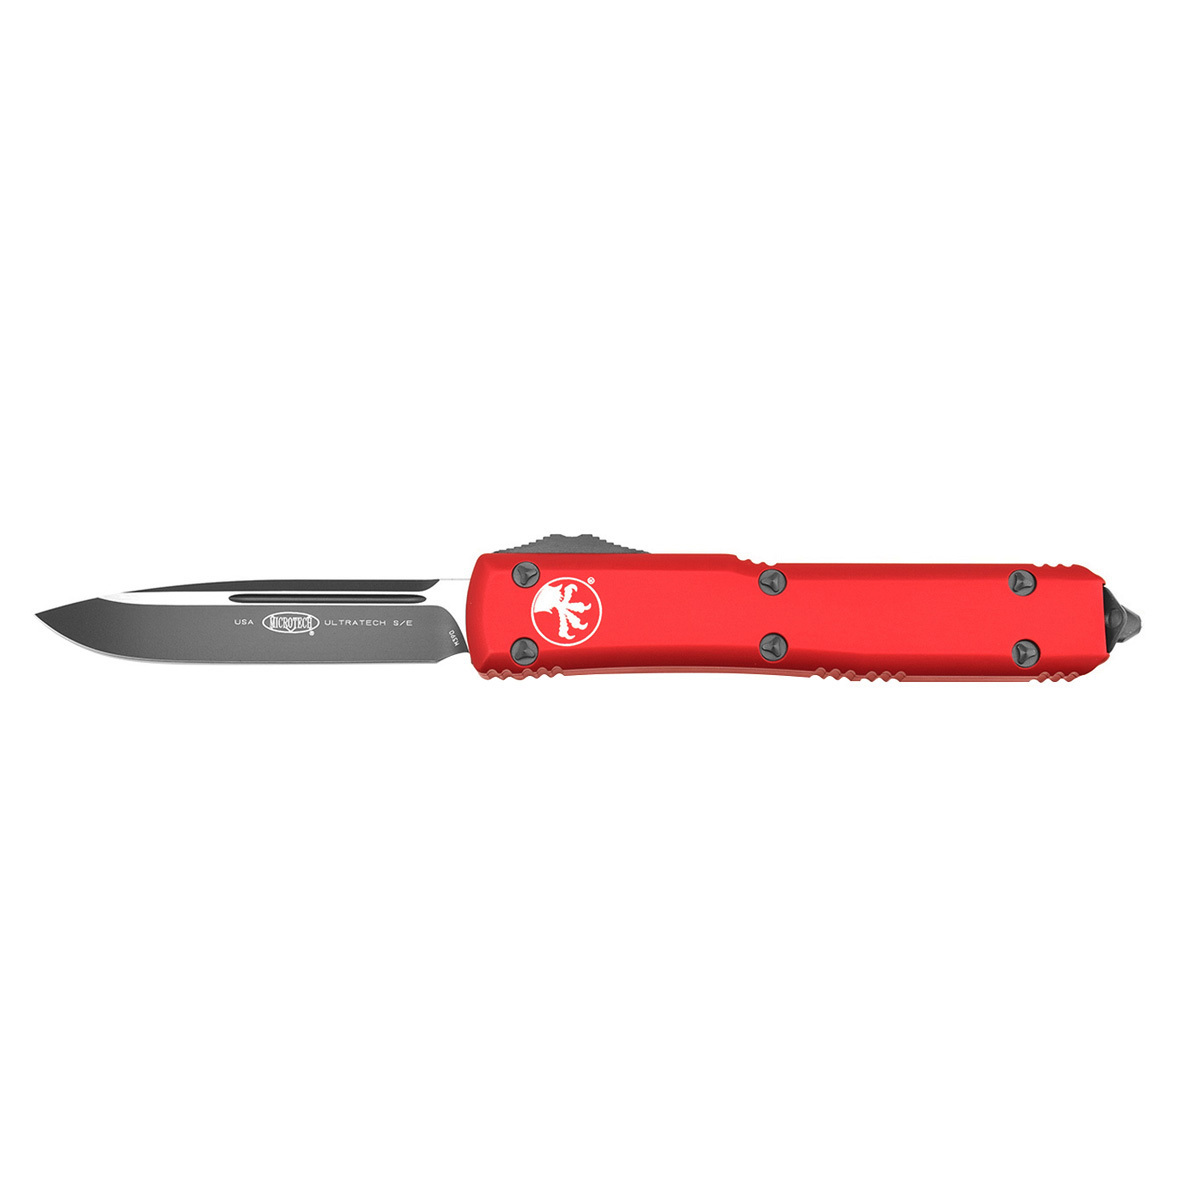 Автоматический складной нож Microtech Ultratech S/E, сталь CTS-204P, рукоять красный алюминий